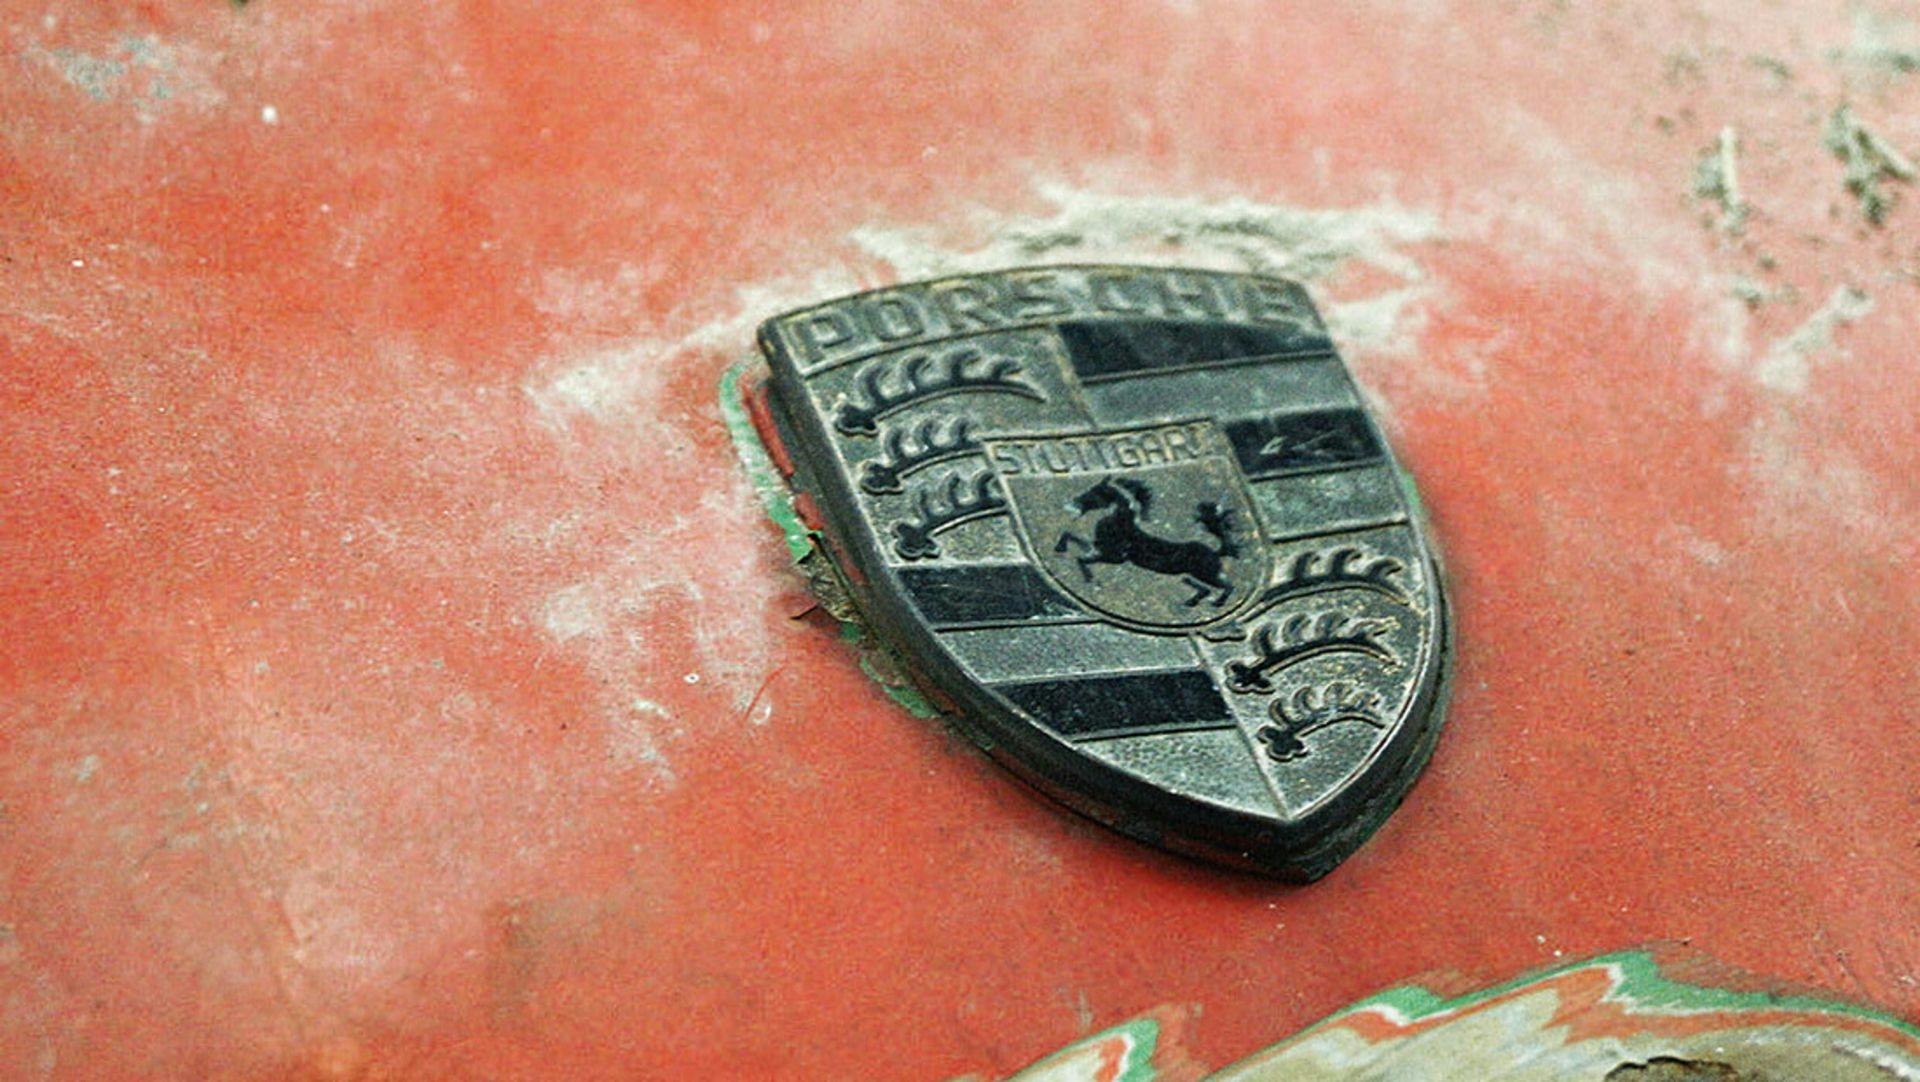 Oldest Porsche 911 restoration badge emblem